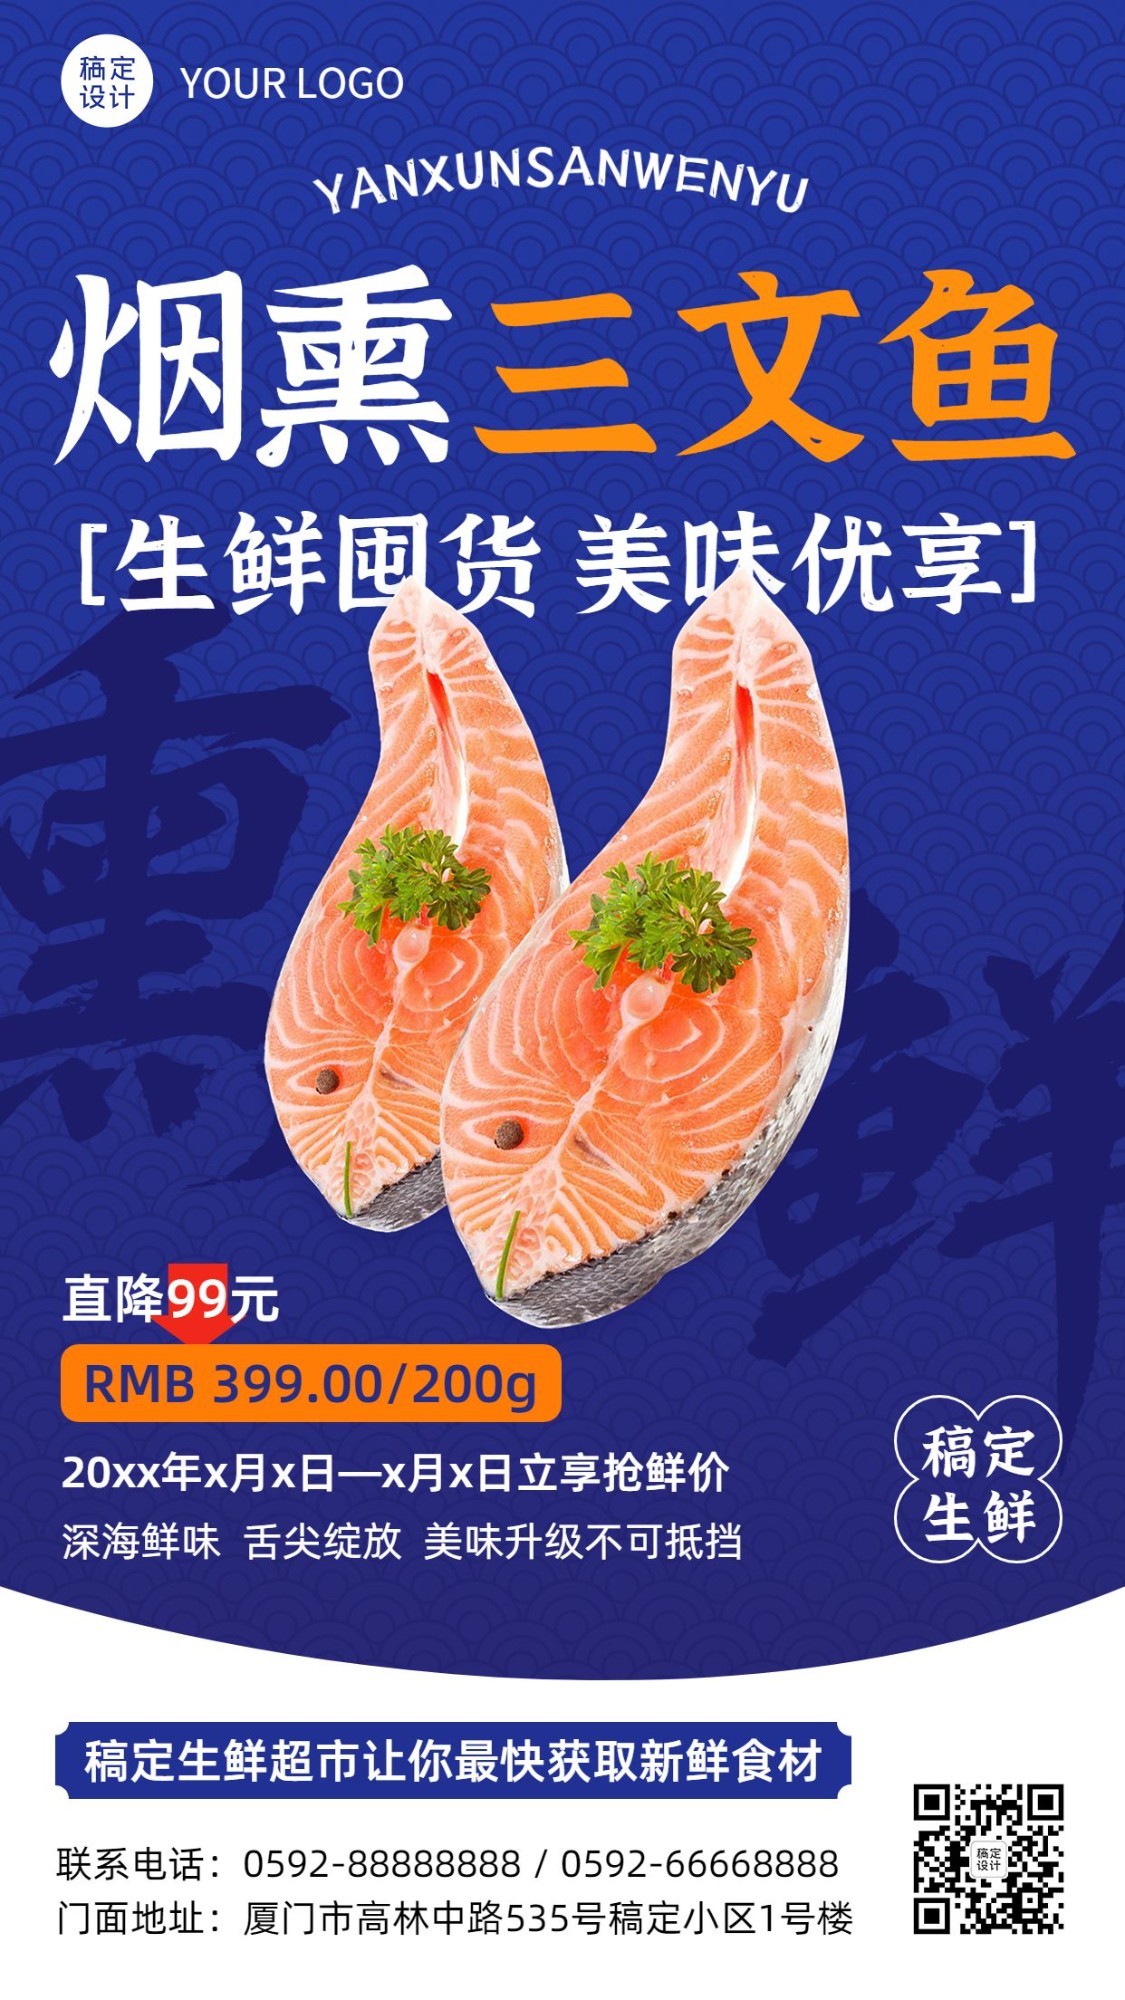 餐饮食品生鲜海鲜三文鱼竖版海报套系预览效果